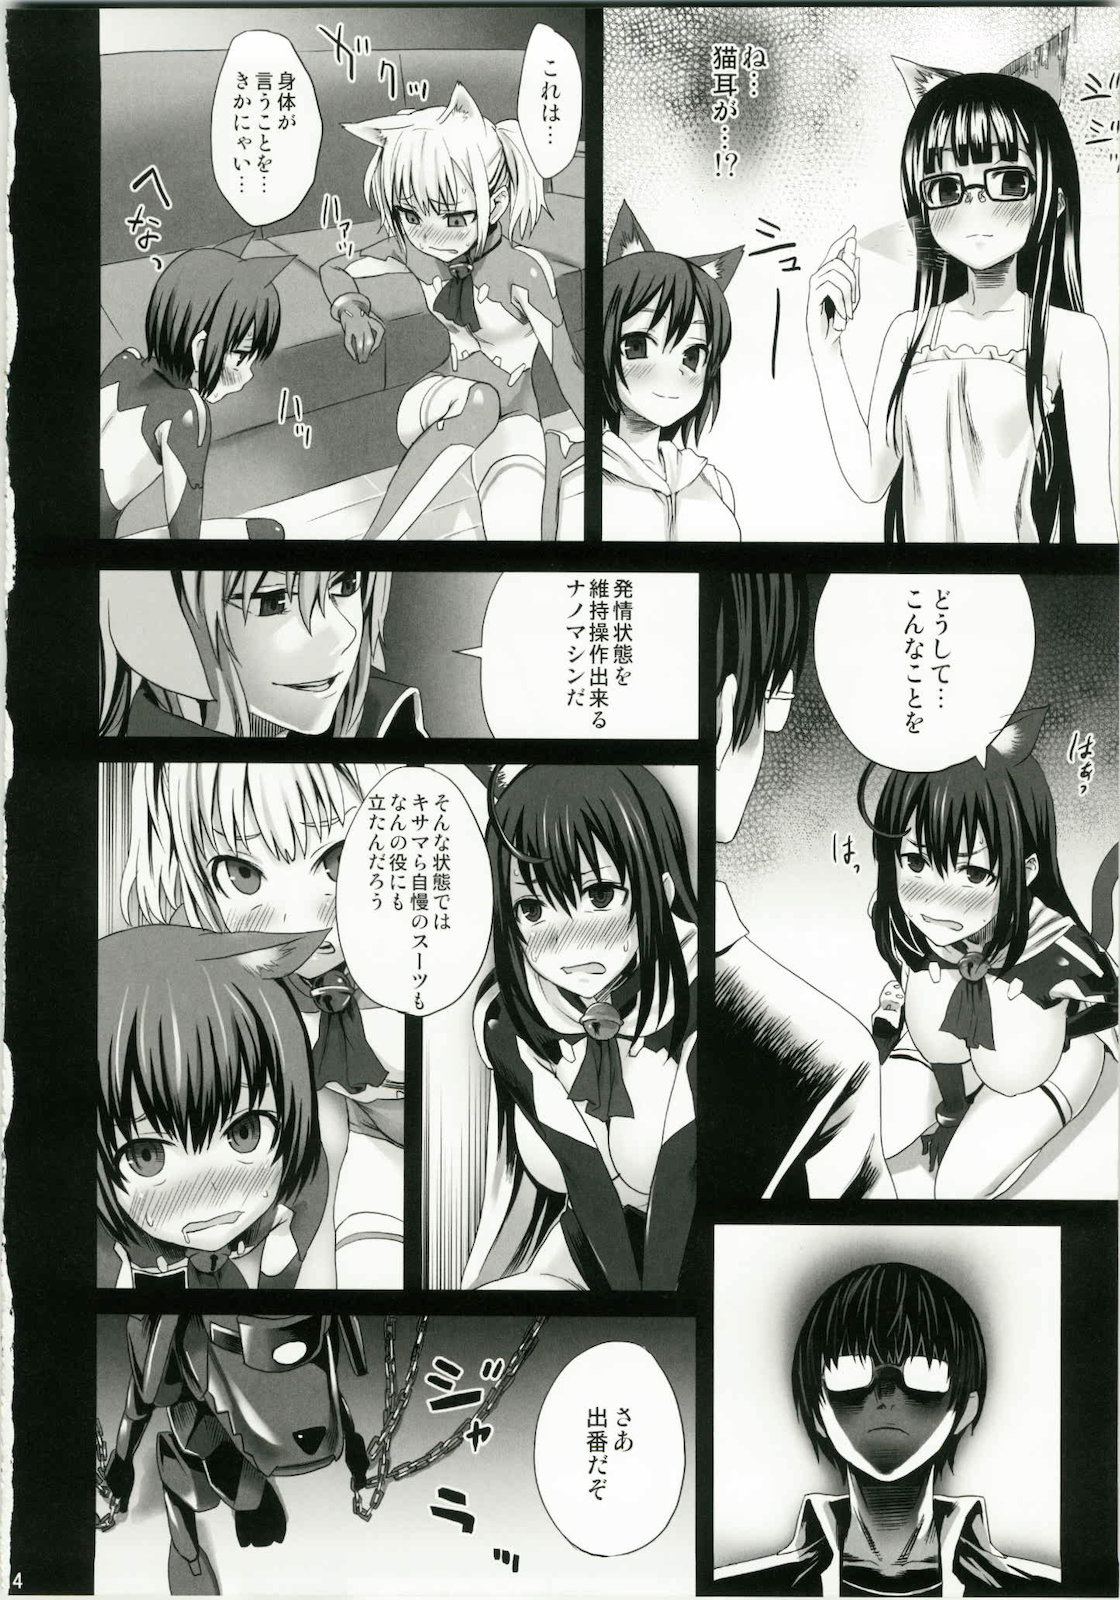 (C79) [Fatalpulse (朝凪)] Victim Girls 10 IT'S TRAINING CATS AND DOGS. (あそびにいくヨ！)